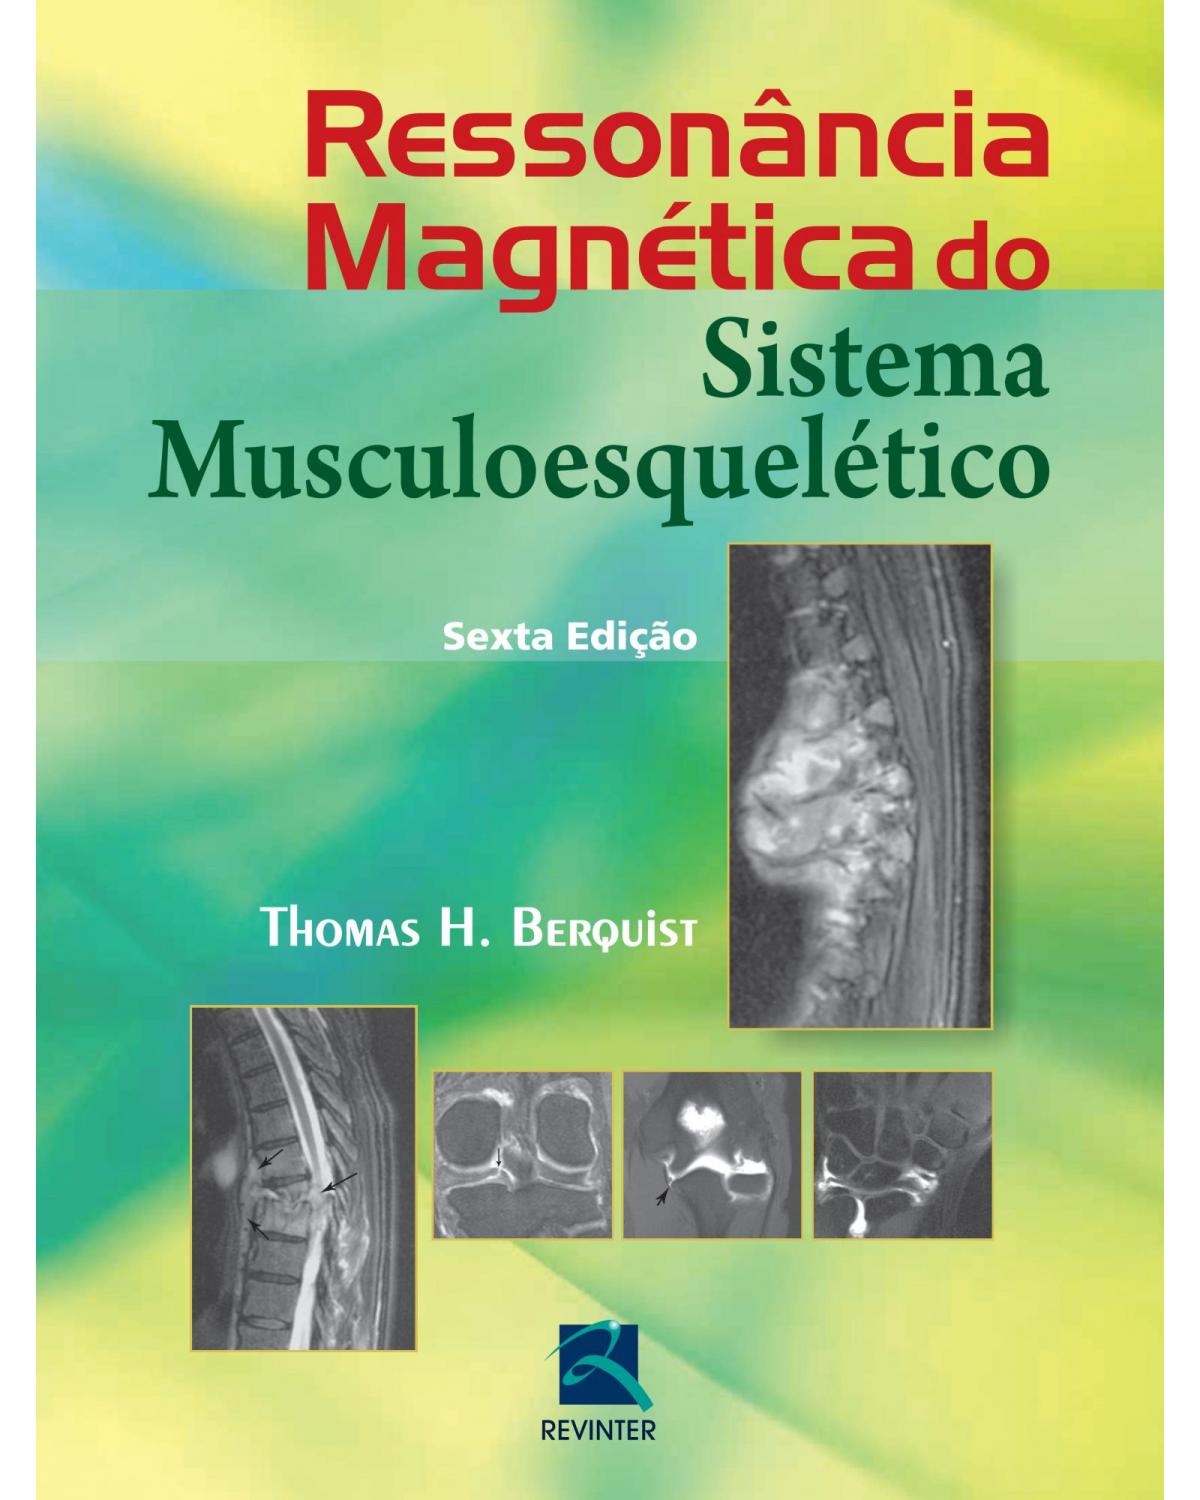 Ressonância magnética do sistema musculoesquelético - 6ª Edição | 2014